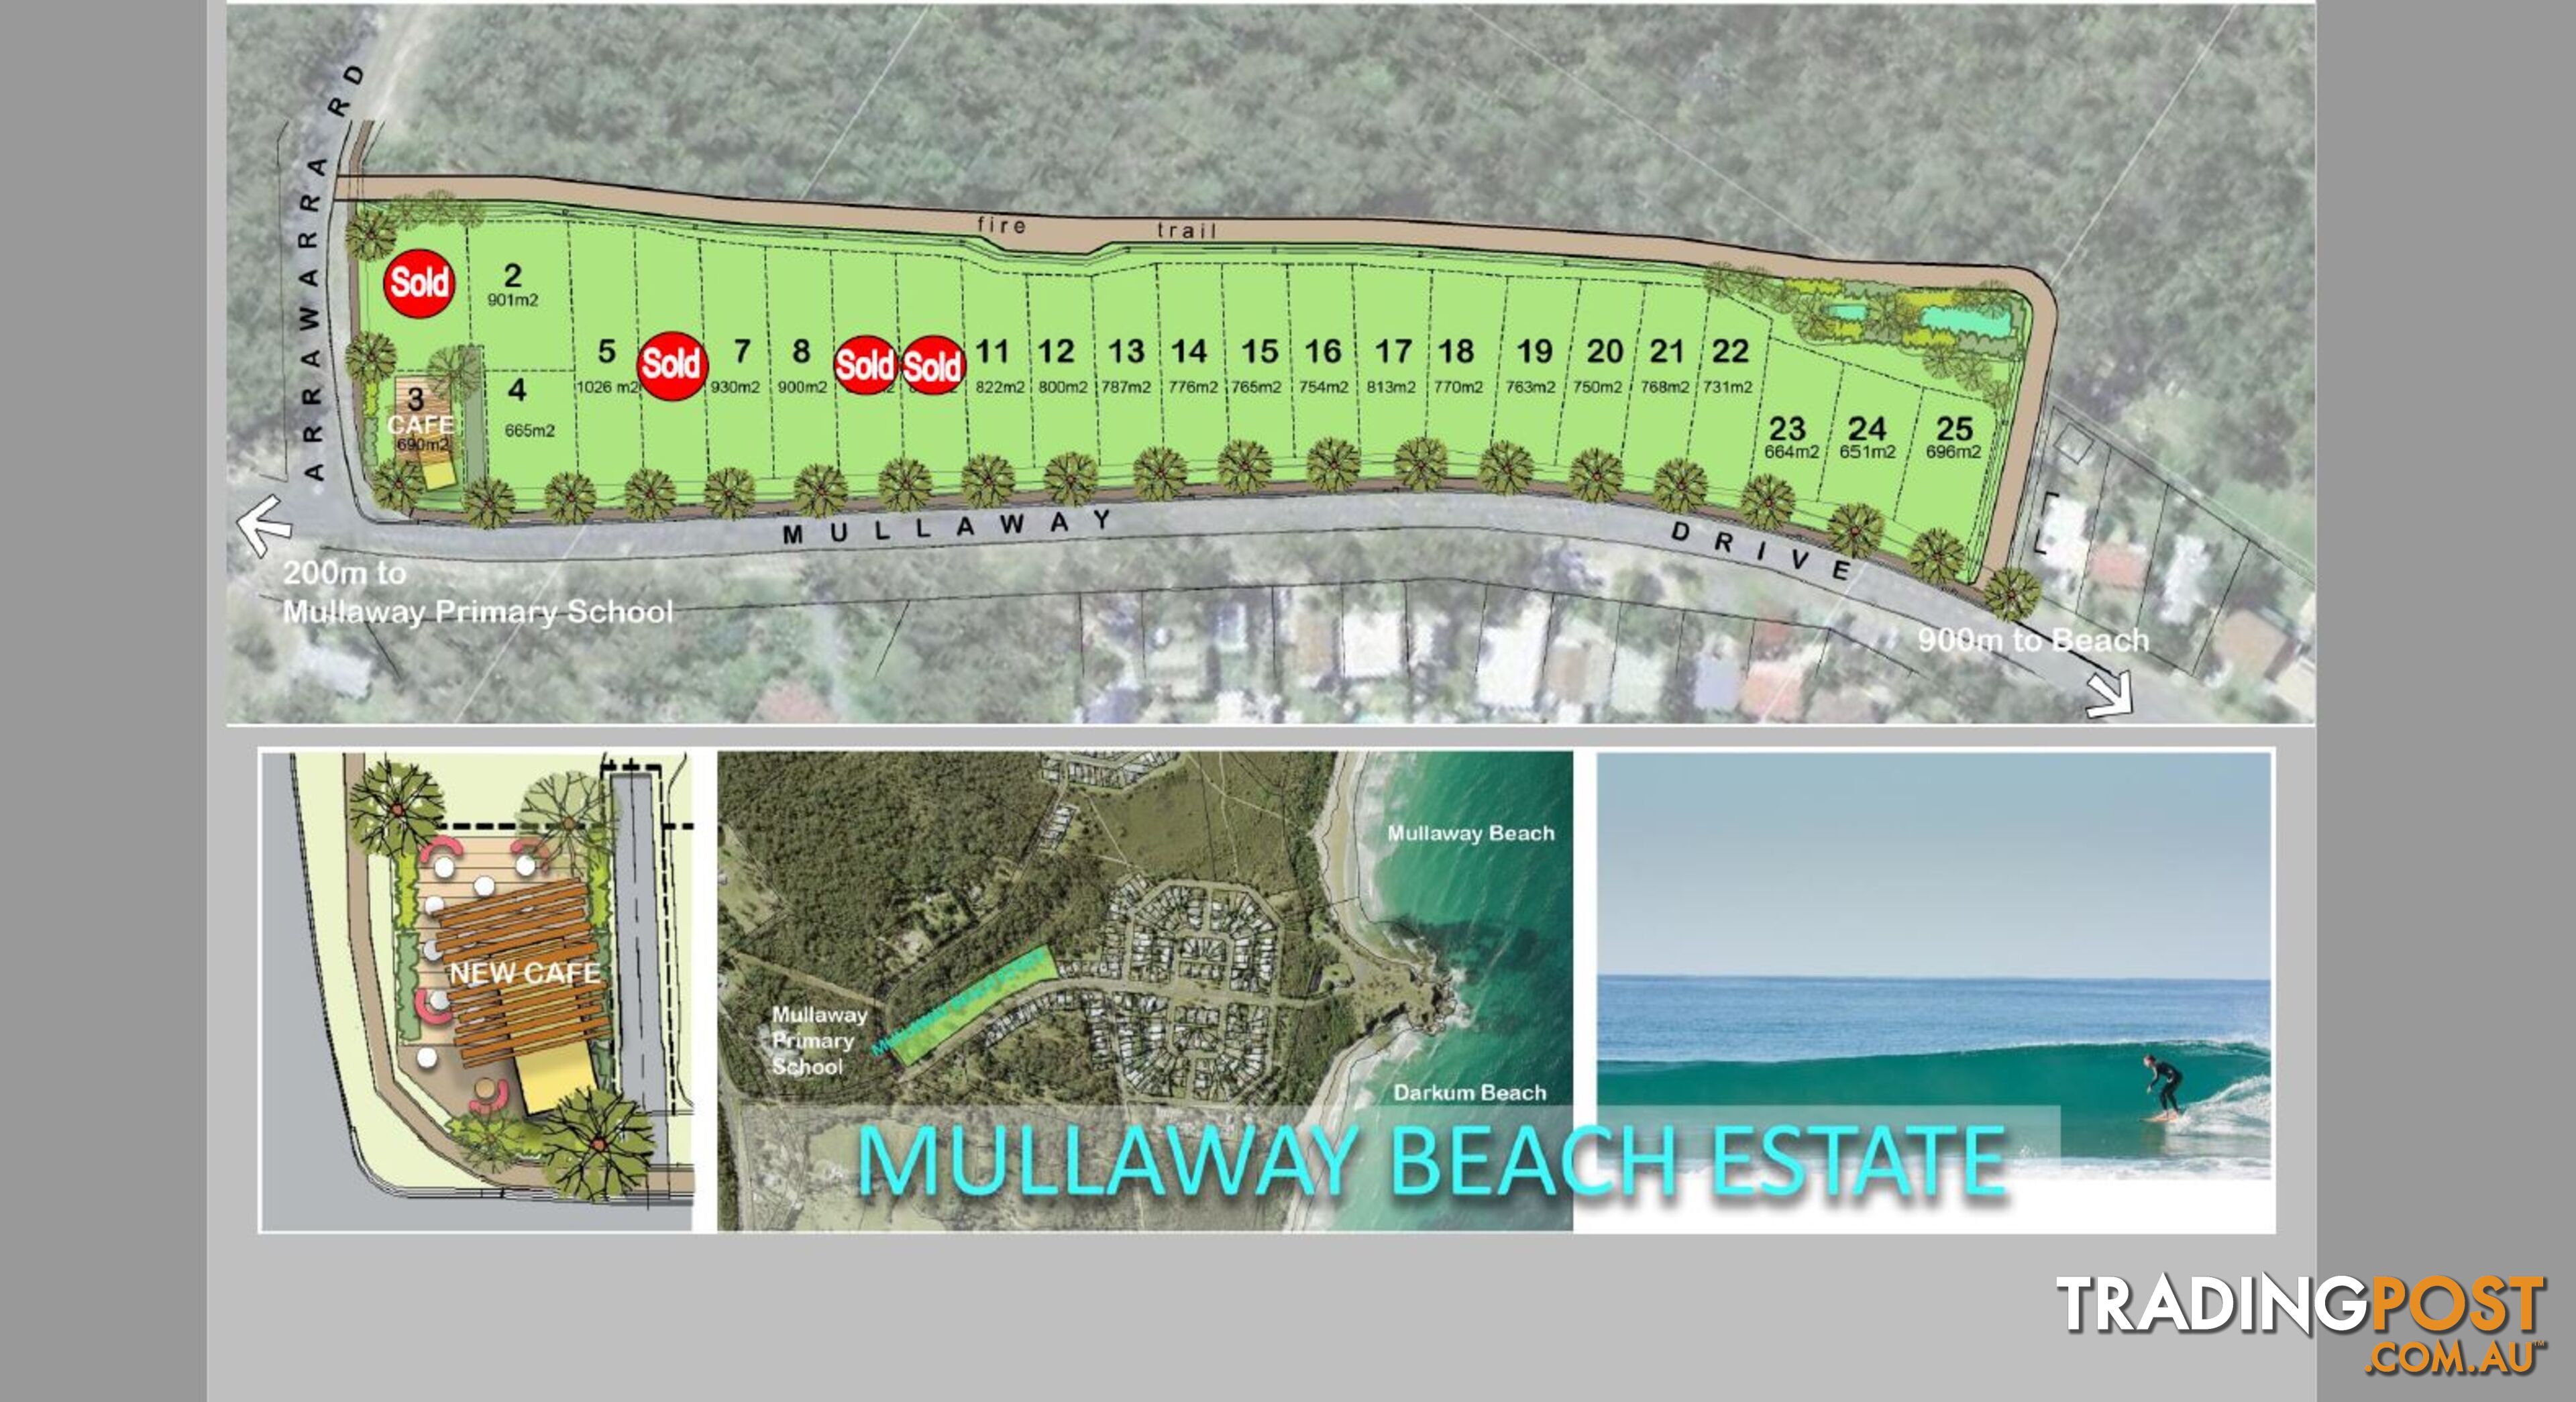 Lot 24 Mullaway Beach Estate MULLAWAY NSW 2456